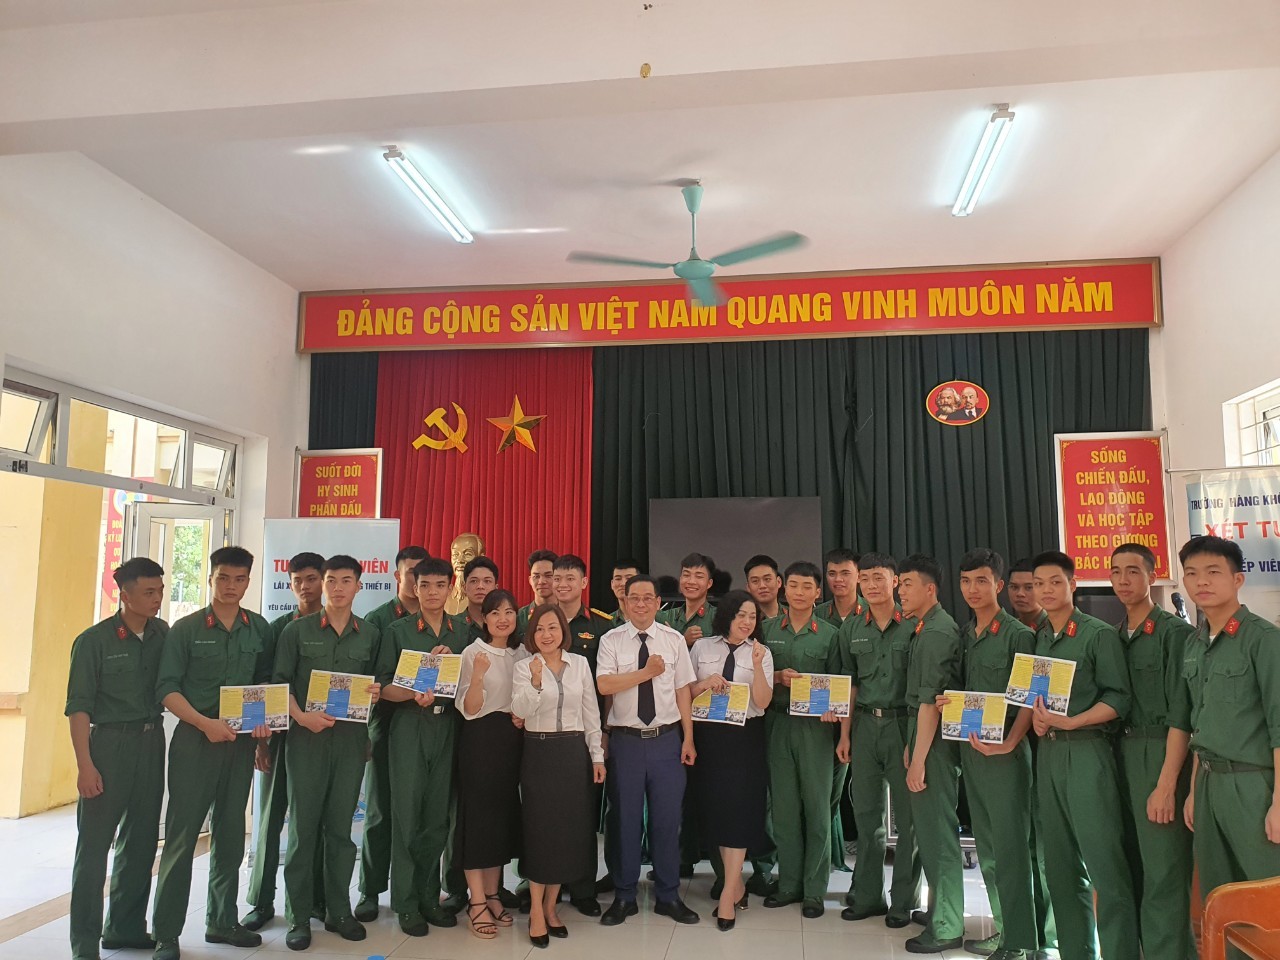 Tư vấn hướng nghiệp nghề cho chiến sỹ Đoàn 275- Bộ tư lệnh bảo vệ Lăng Chủ tịch Hồ Chí Minh